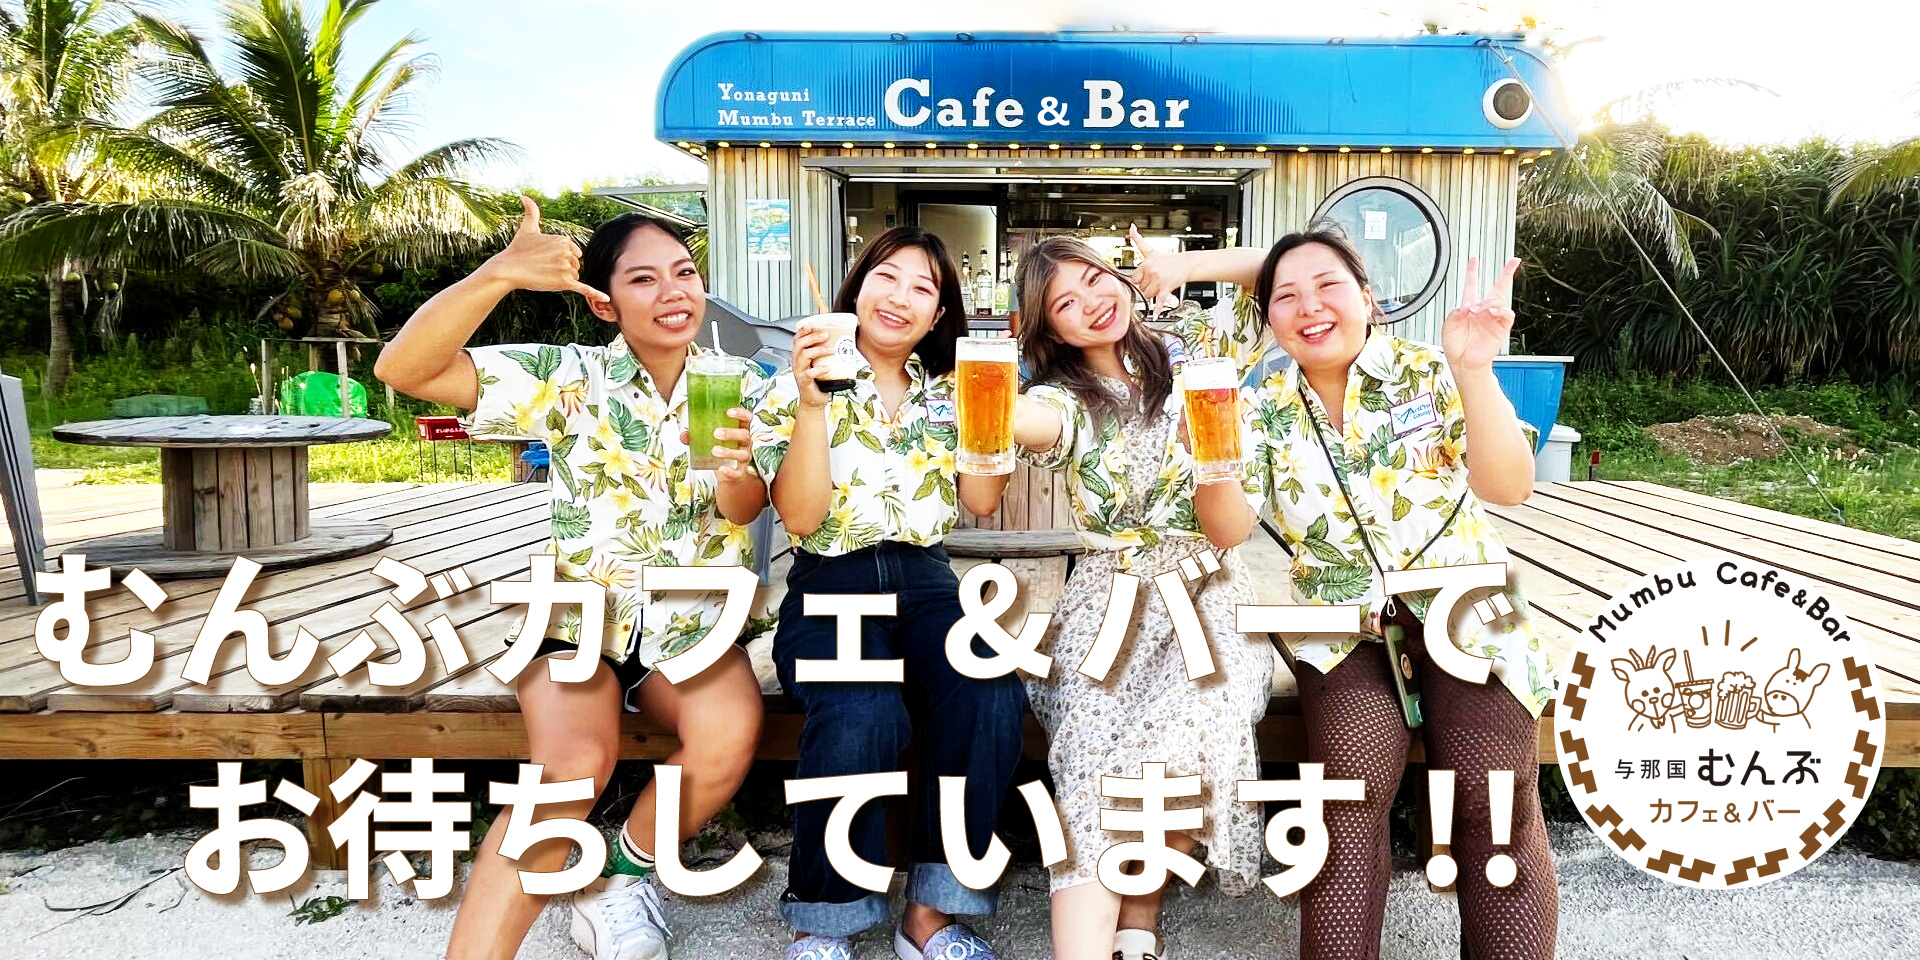 与那国むんぶカフェ&バーの前で乾杯する若い女性4人